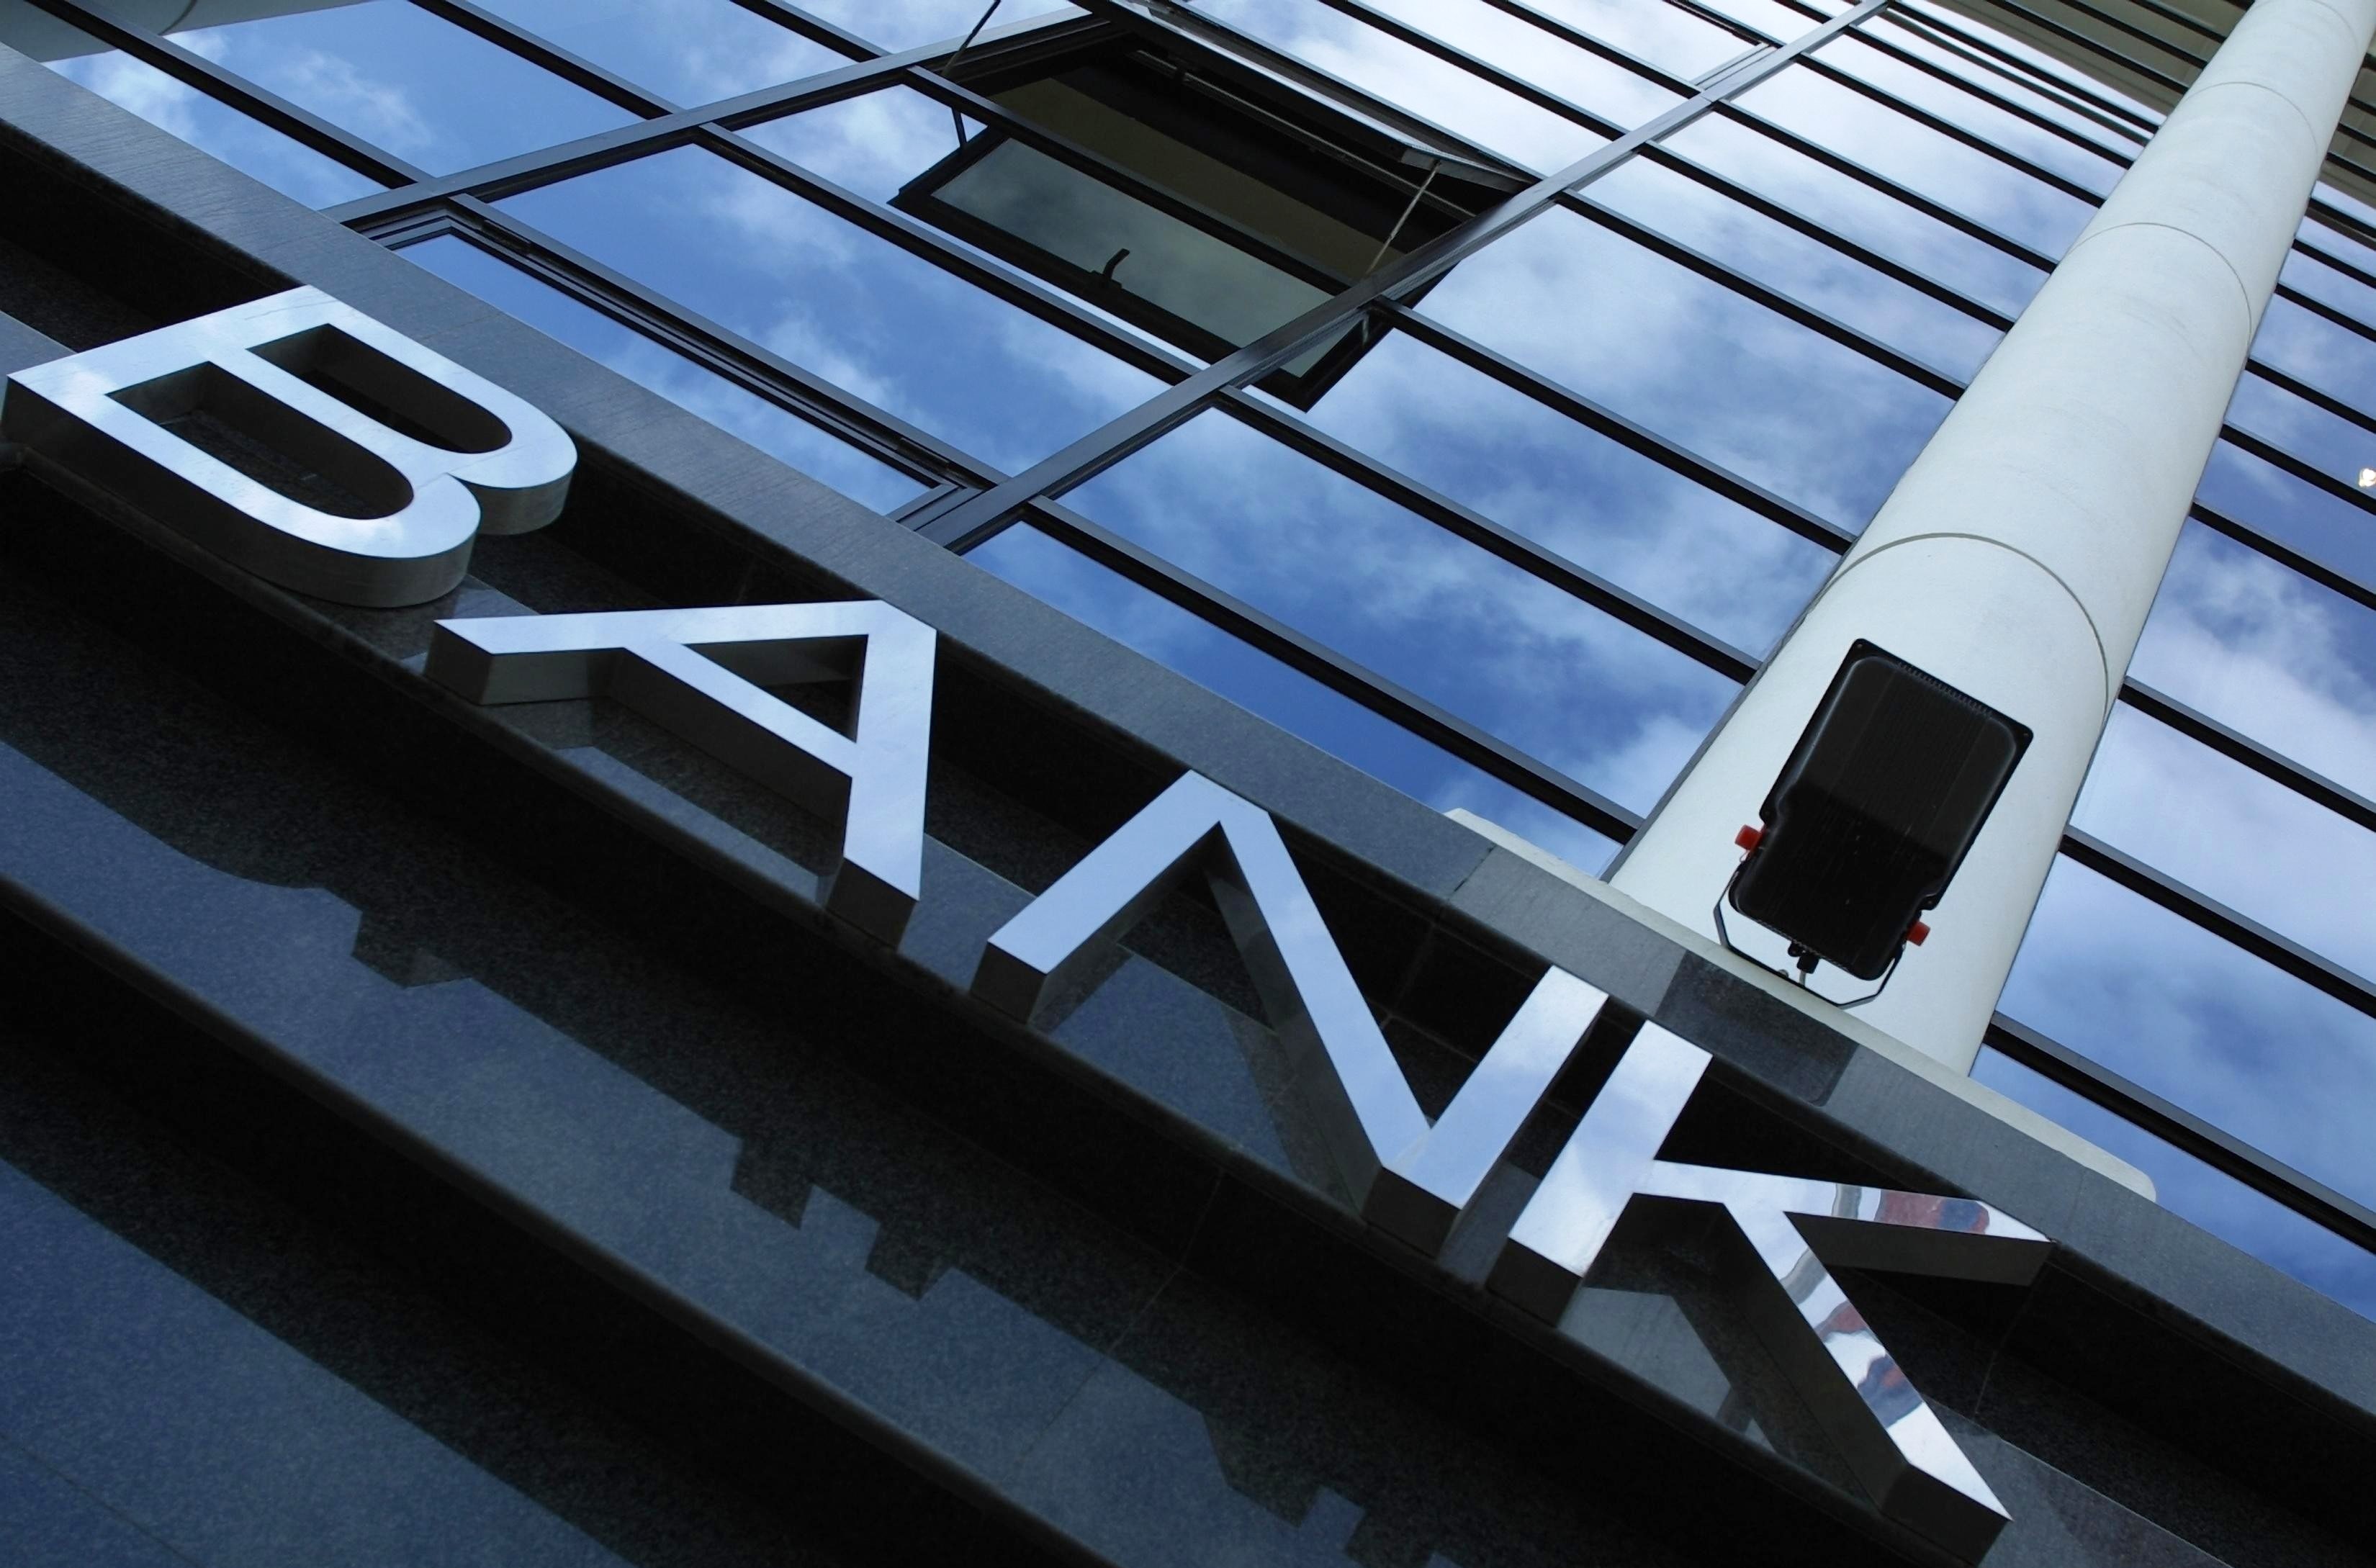 “Ці банки є проблемними”: в НБУ попередили українців про труднощі в деяких банках